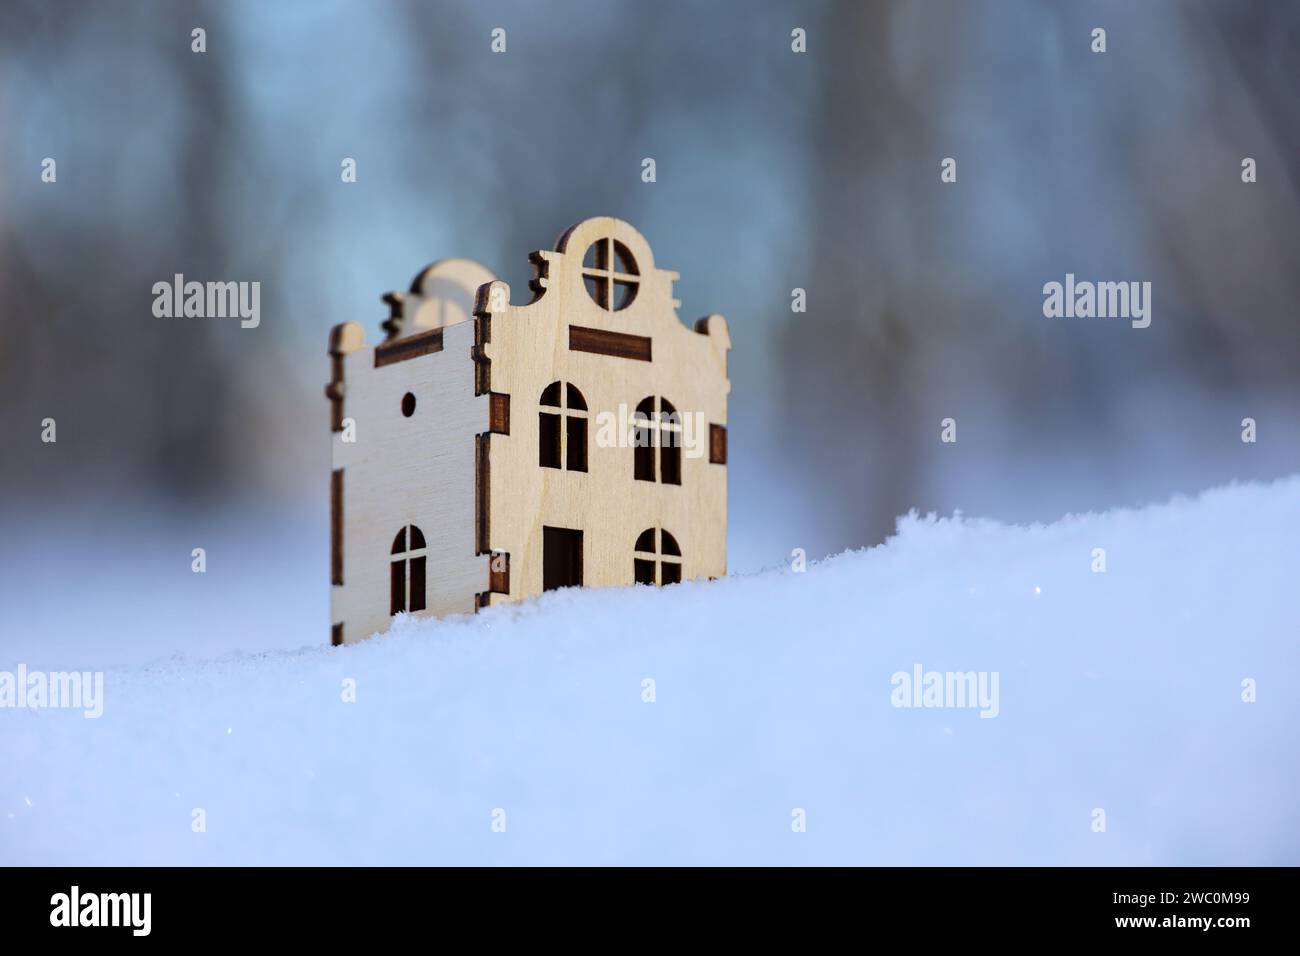 Modello di casa in legno su una neve sullo sfondo della foresta invernale. Concetto di immobili in un'area ecologicamente pulita Foto Stock